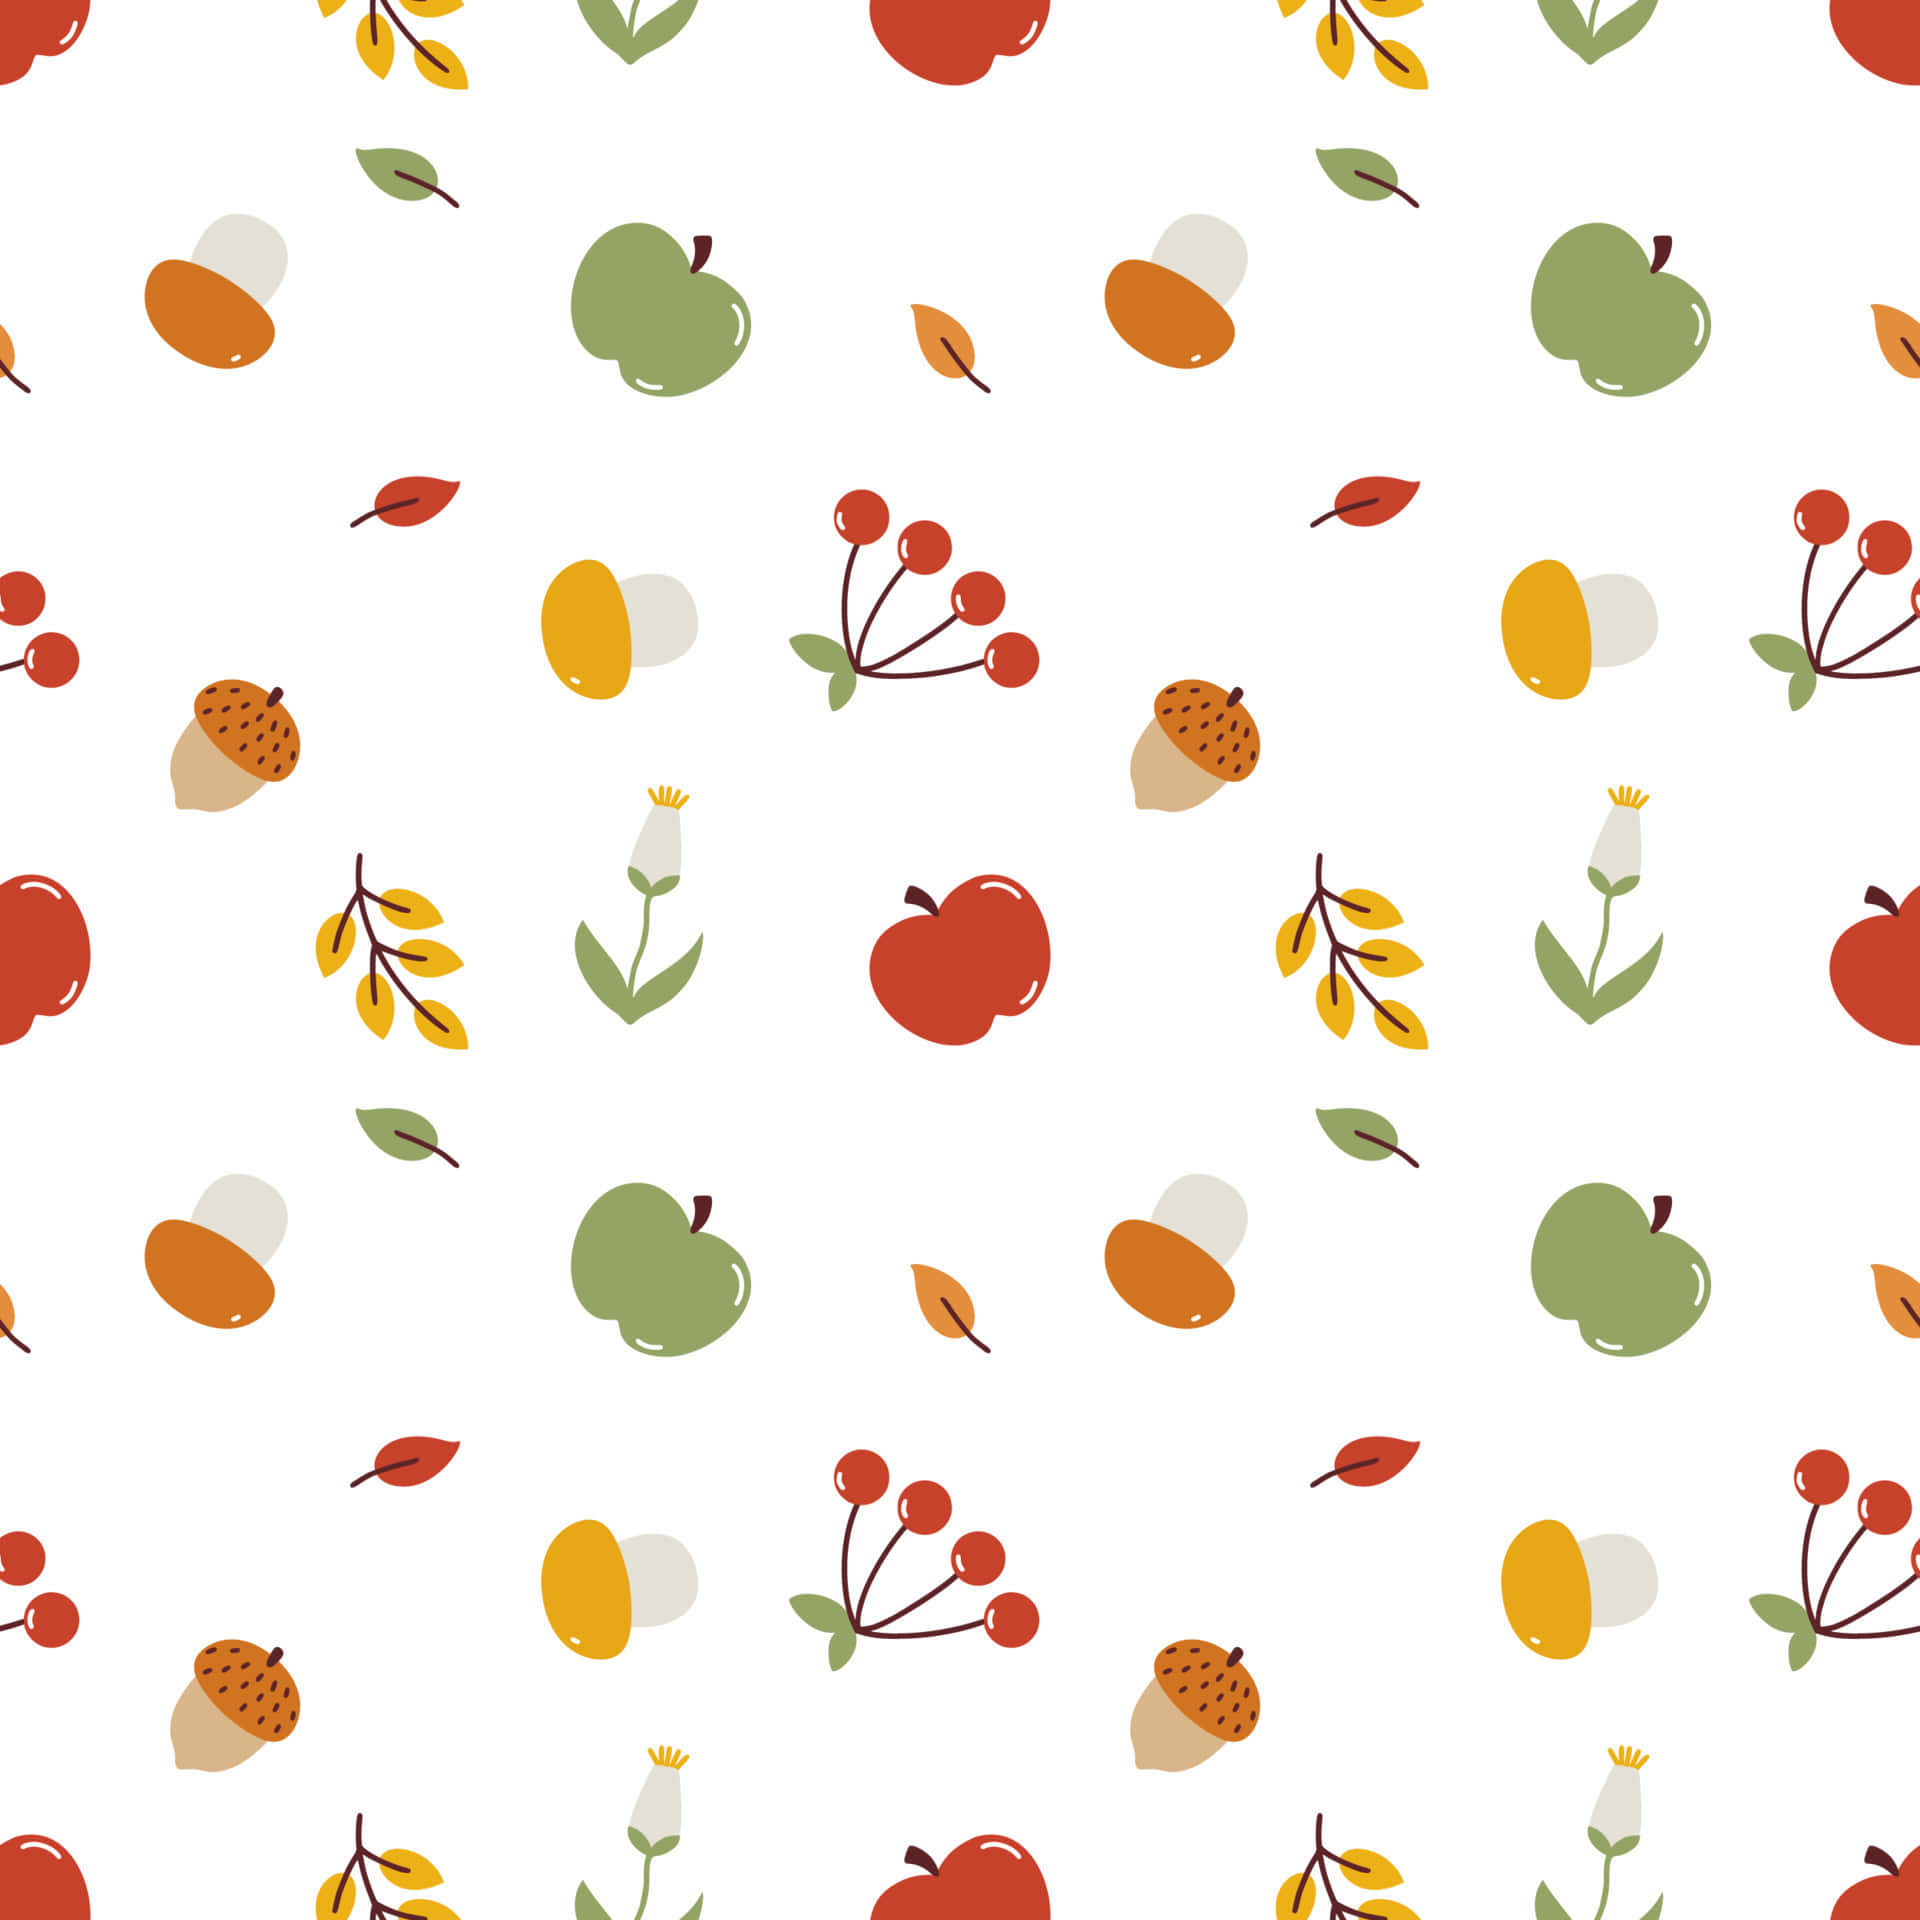 Holdir Herbstliche Stimmung Mit Diesem Entzückenden Muster! Wallpaper